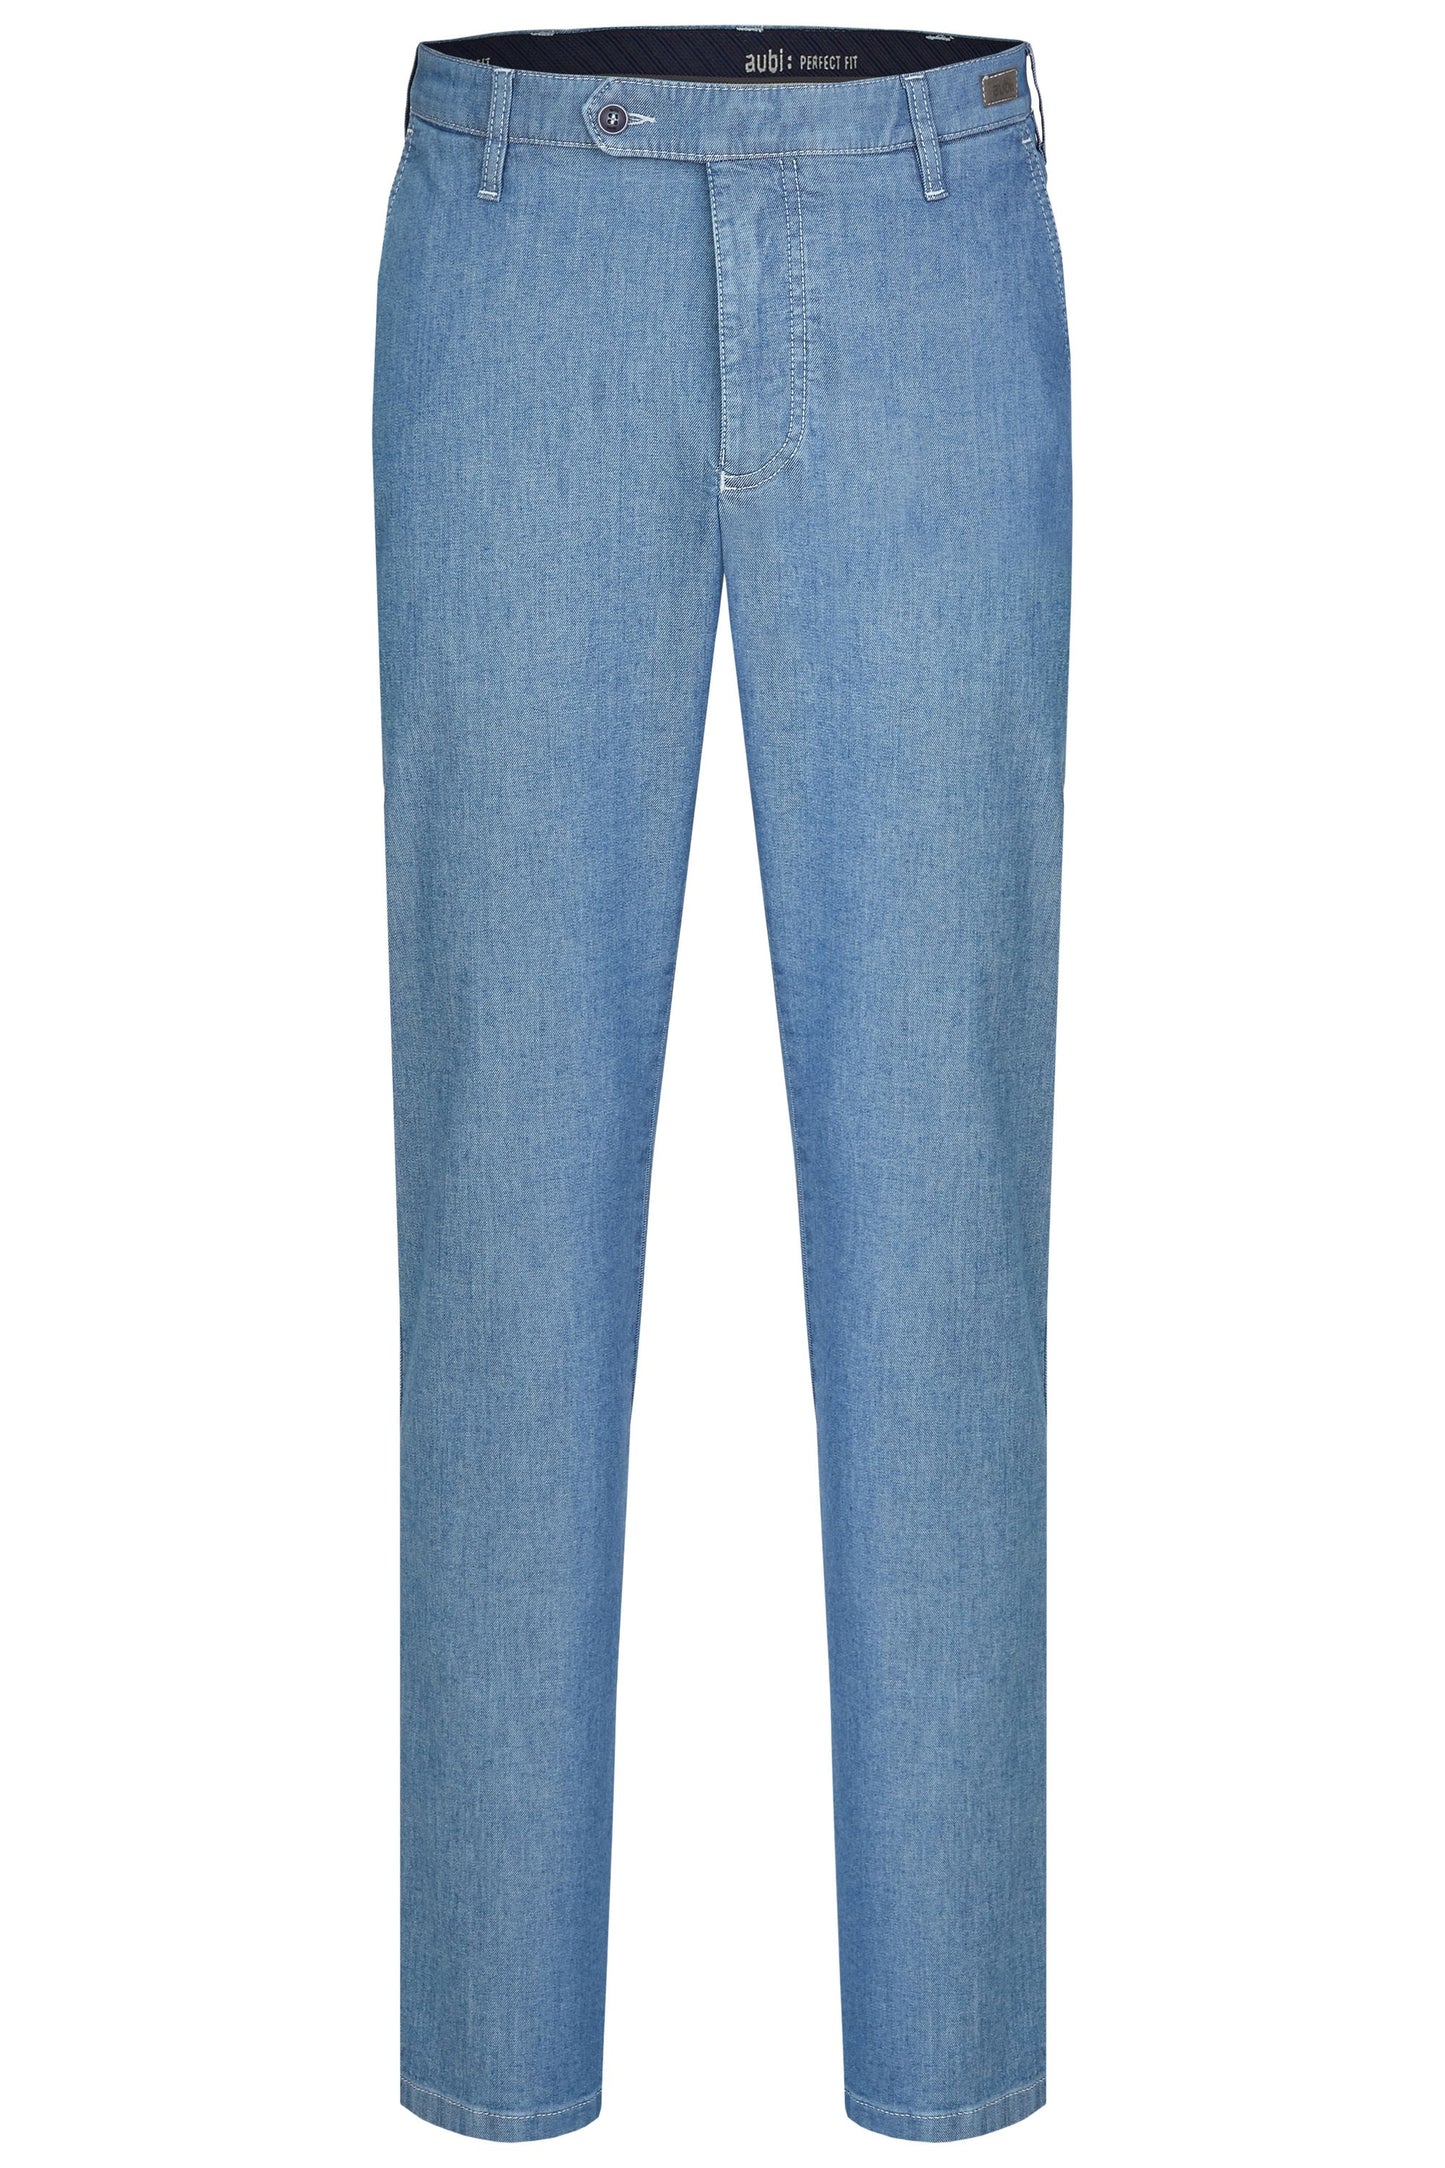 aubi Perfect Fit Herren Sommer Jeans Hose Stretch aus Baumwolle High Flex Modell 526